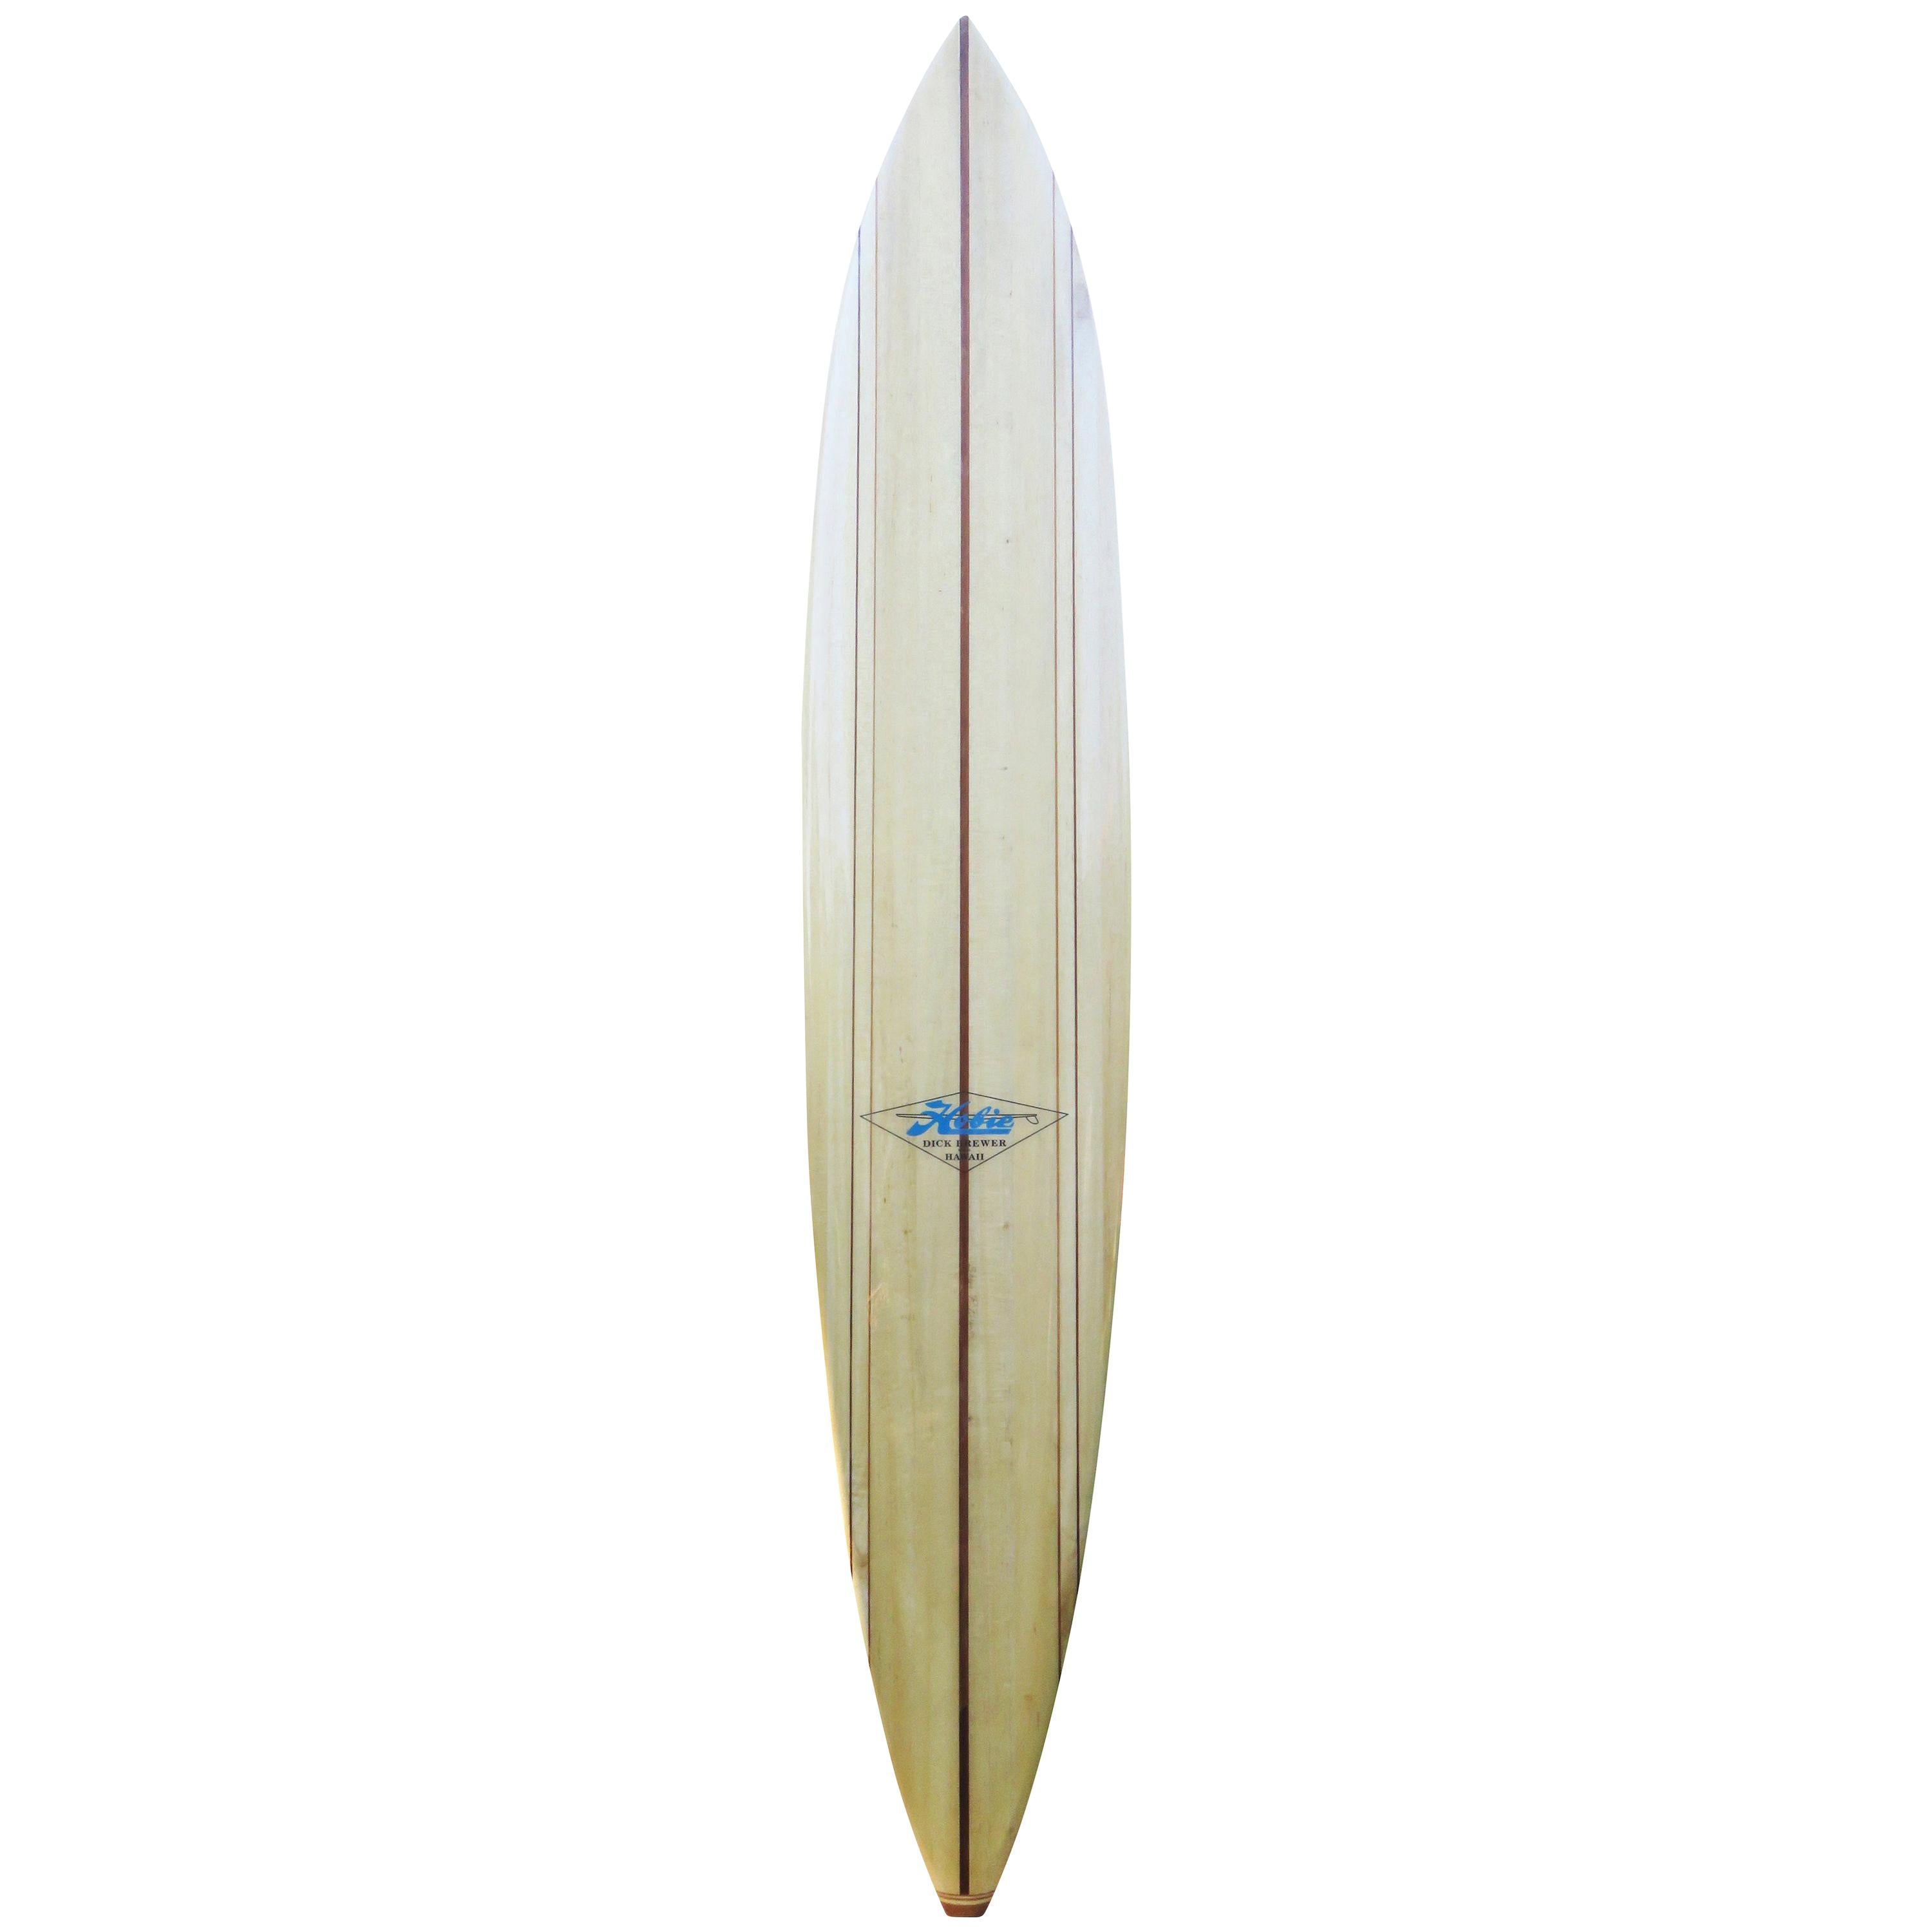 Hawaiian Koa Wood Surfboard Trophy or Award Vintage Style Longboard Kahanamoku 